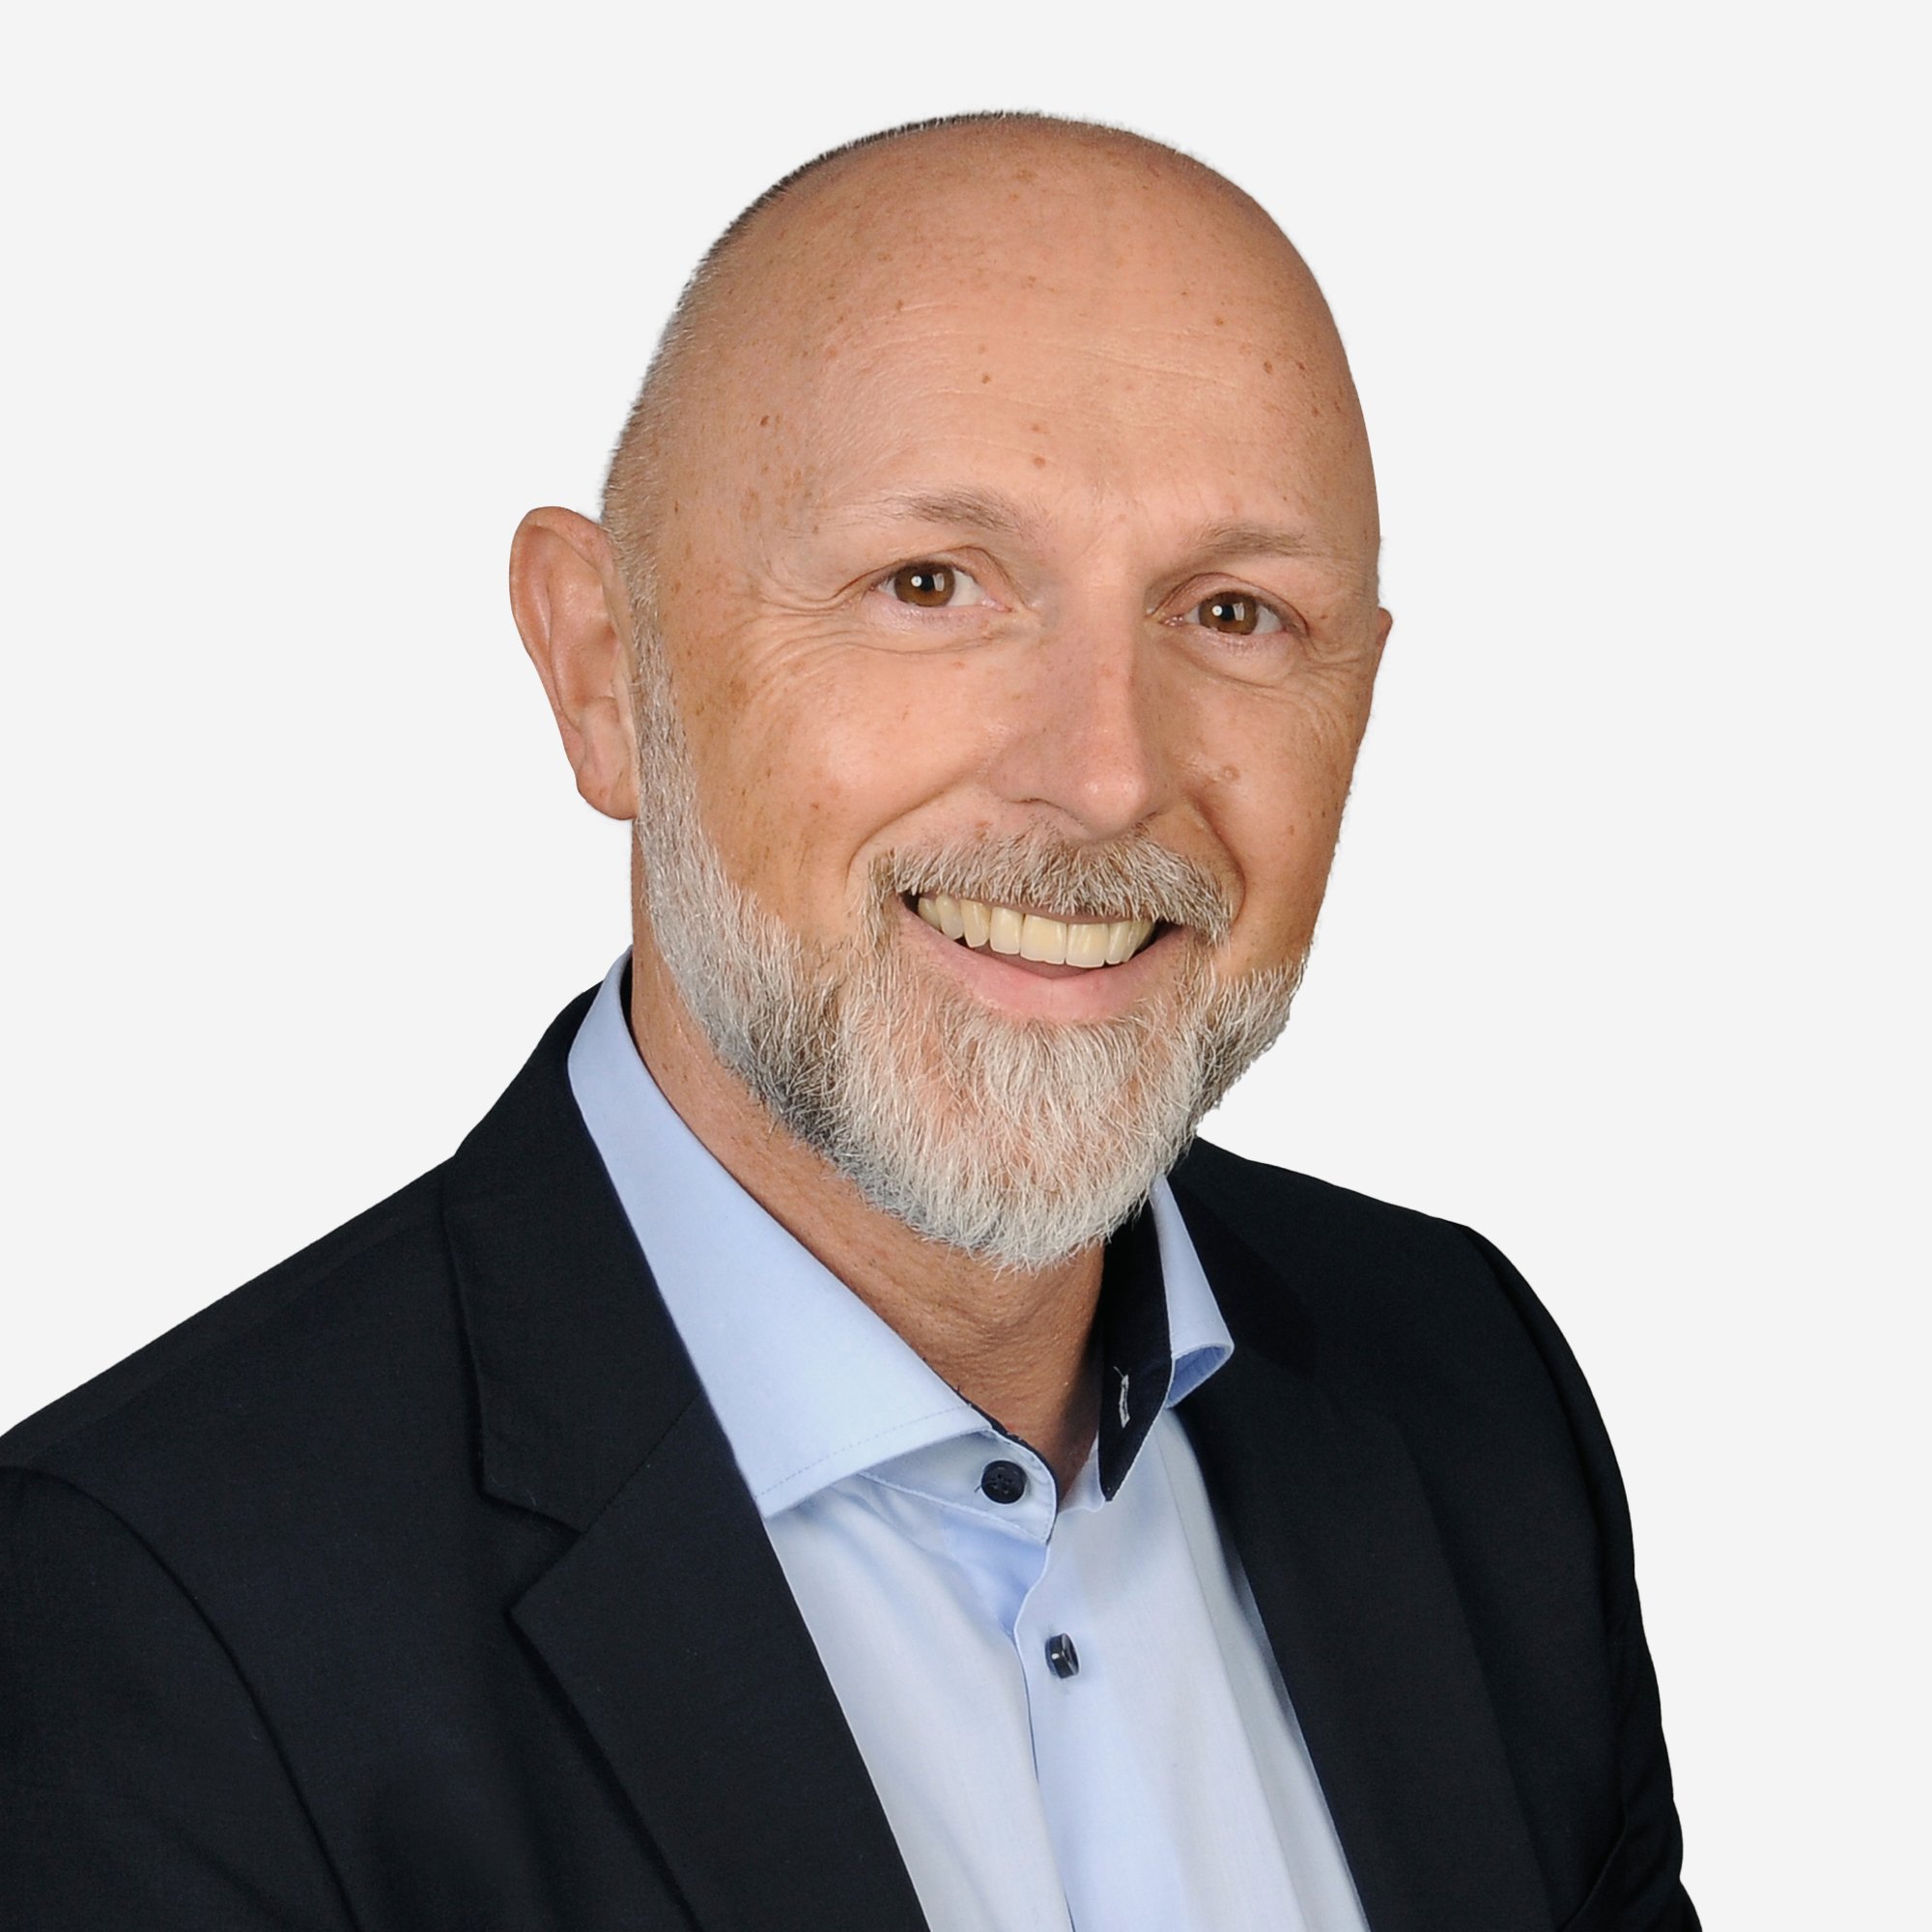 Profilbild von GAPTEQ-Gründer Hermann Hebben in hellblauem Hemd und dunklem Sacko